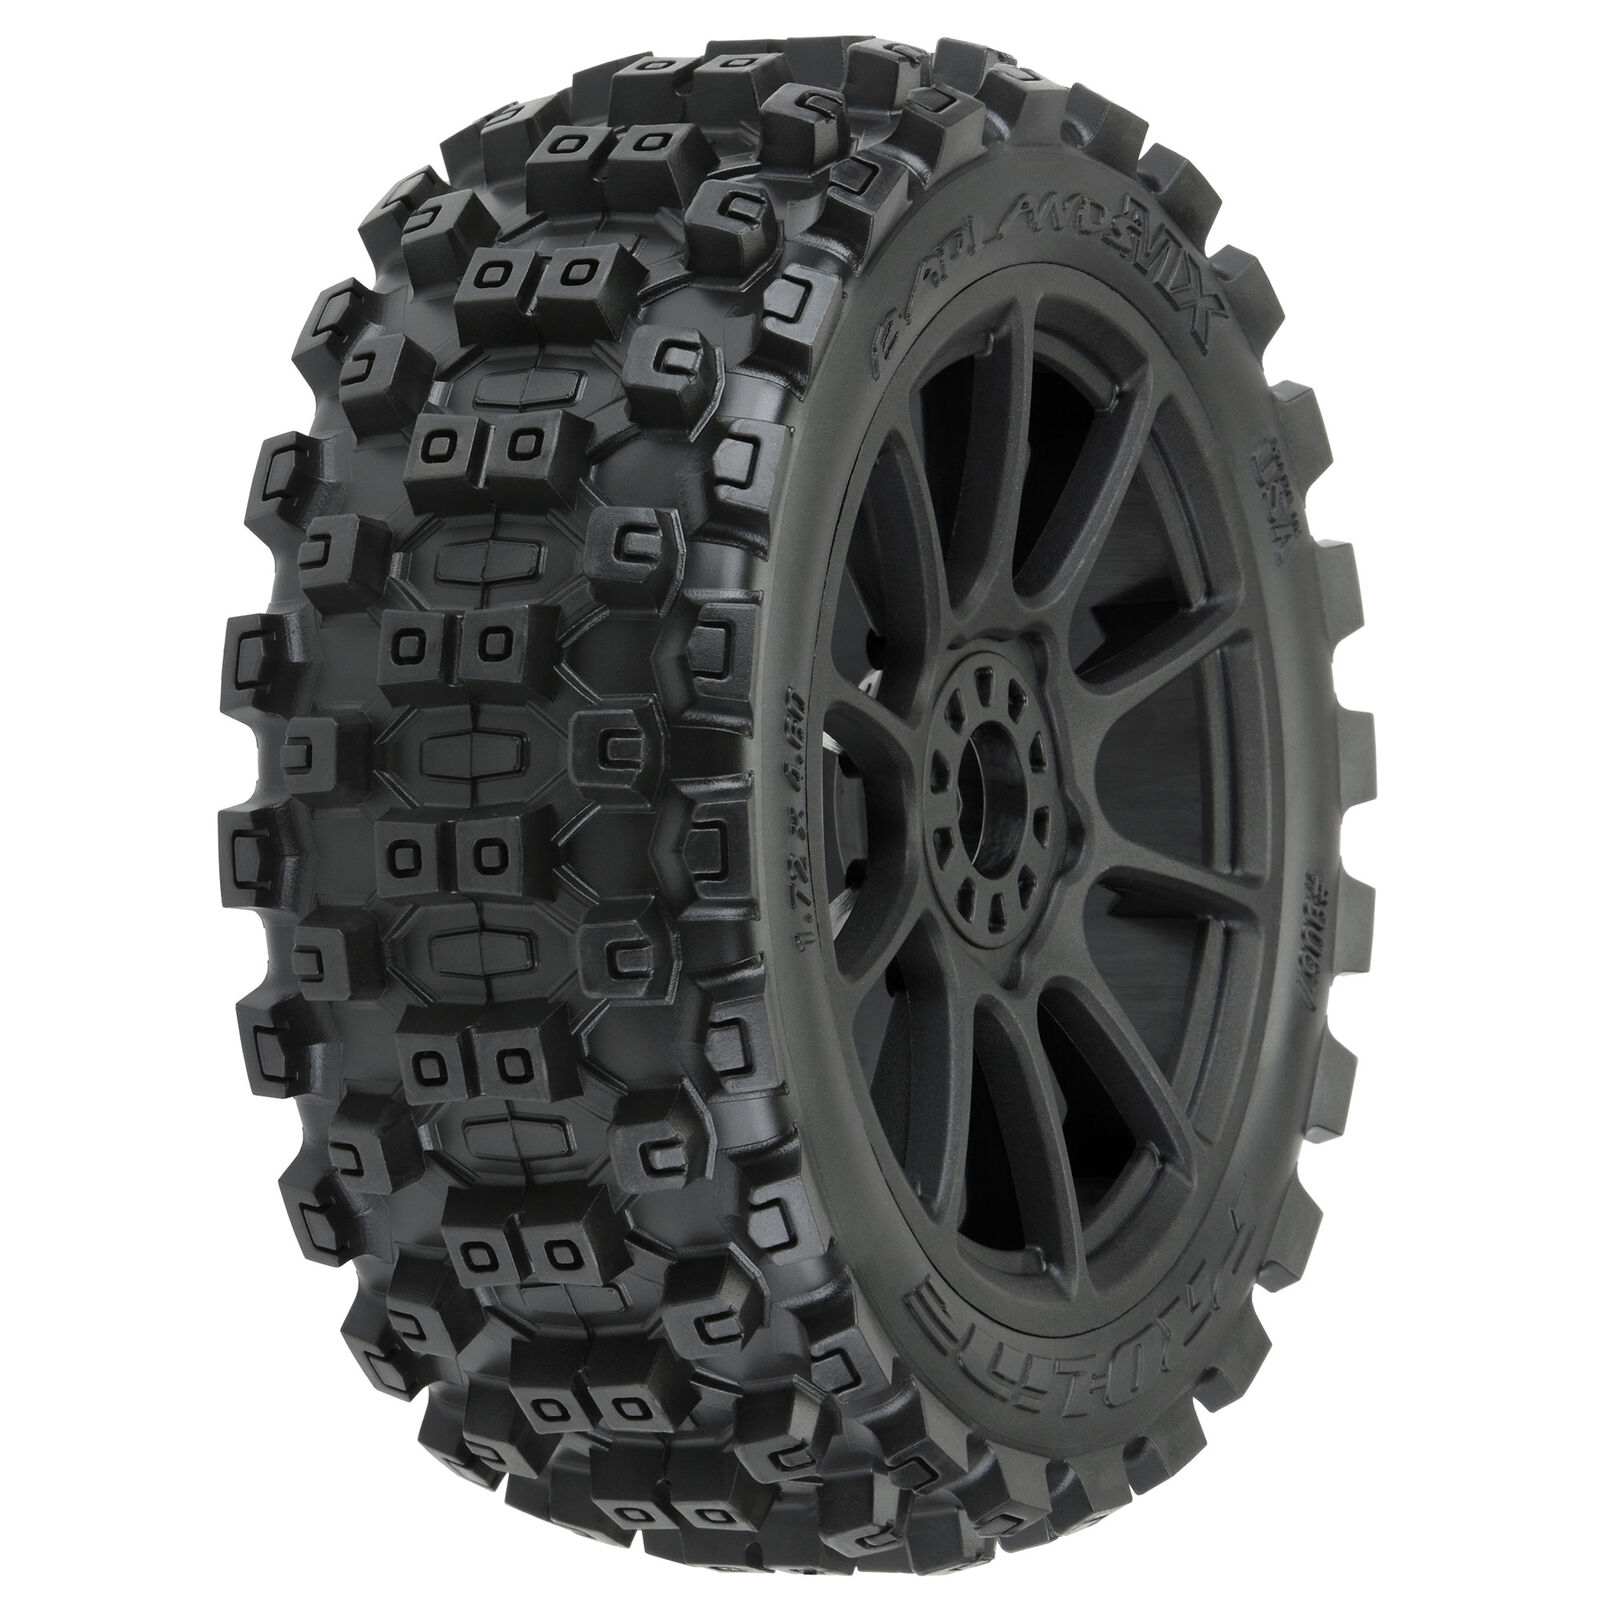 ProLine 9067-21 - 1/8 Badlands MX M2 Fr/Rr Buggy Tires Mounted 17mm Black Mach 10